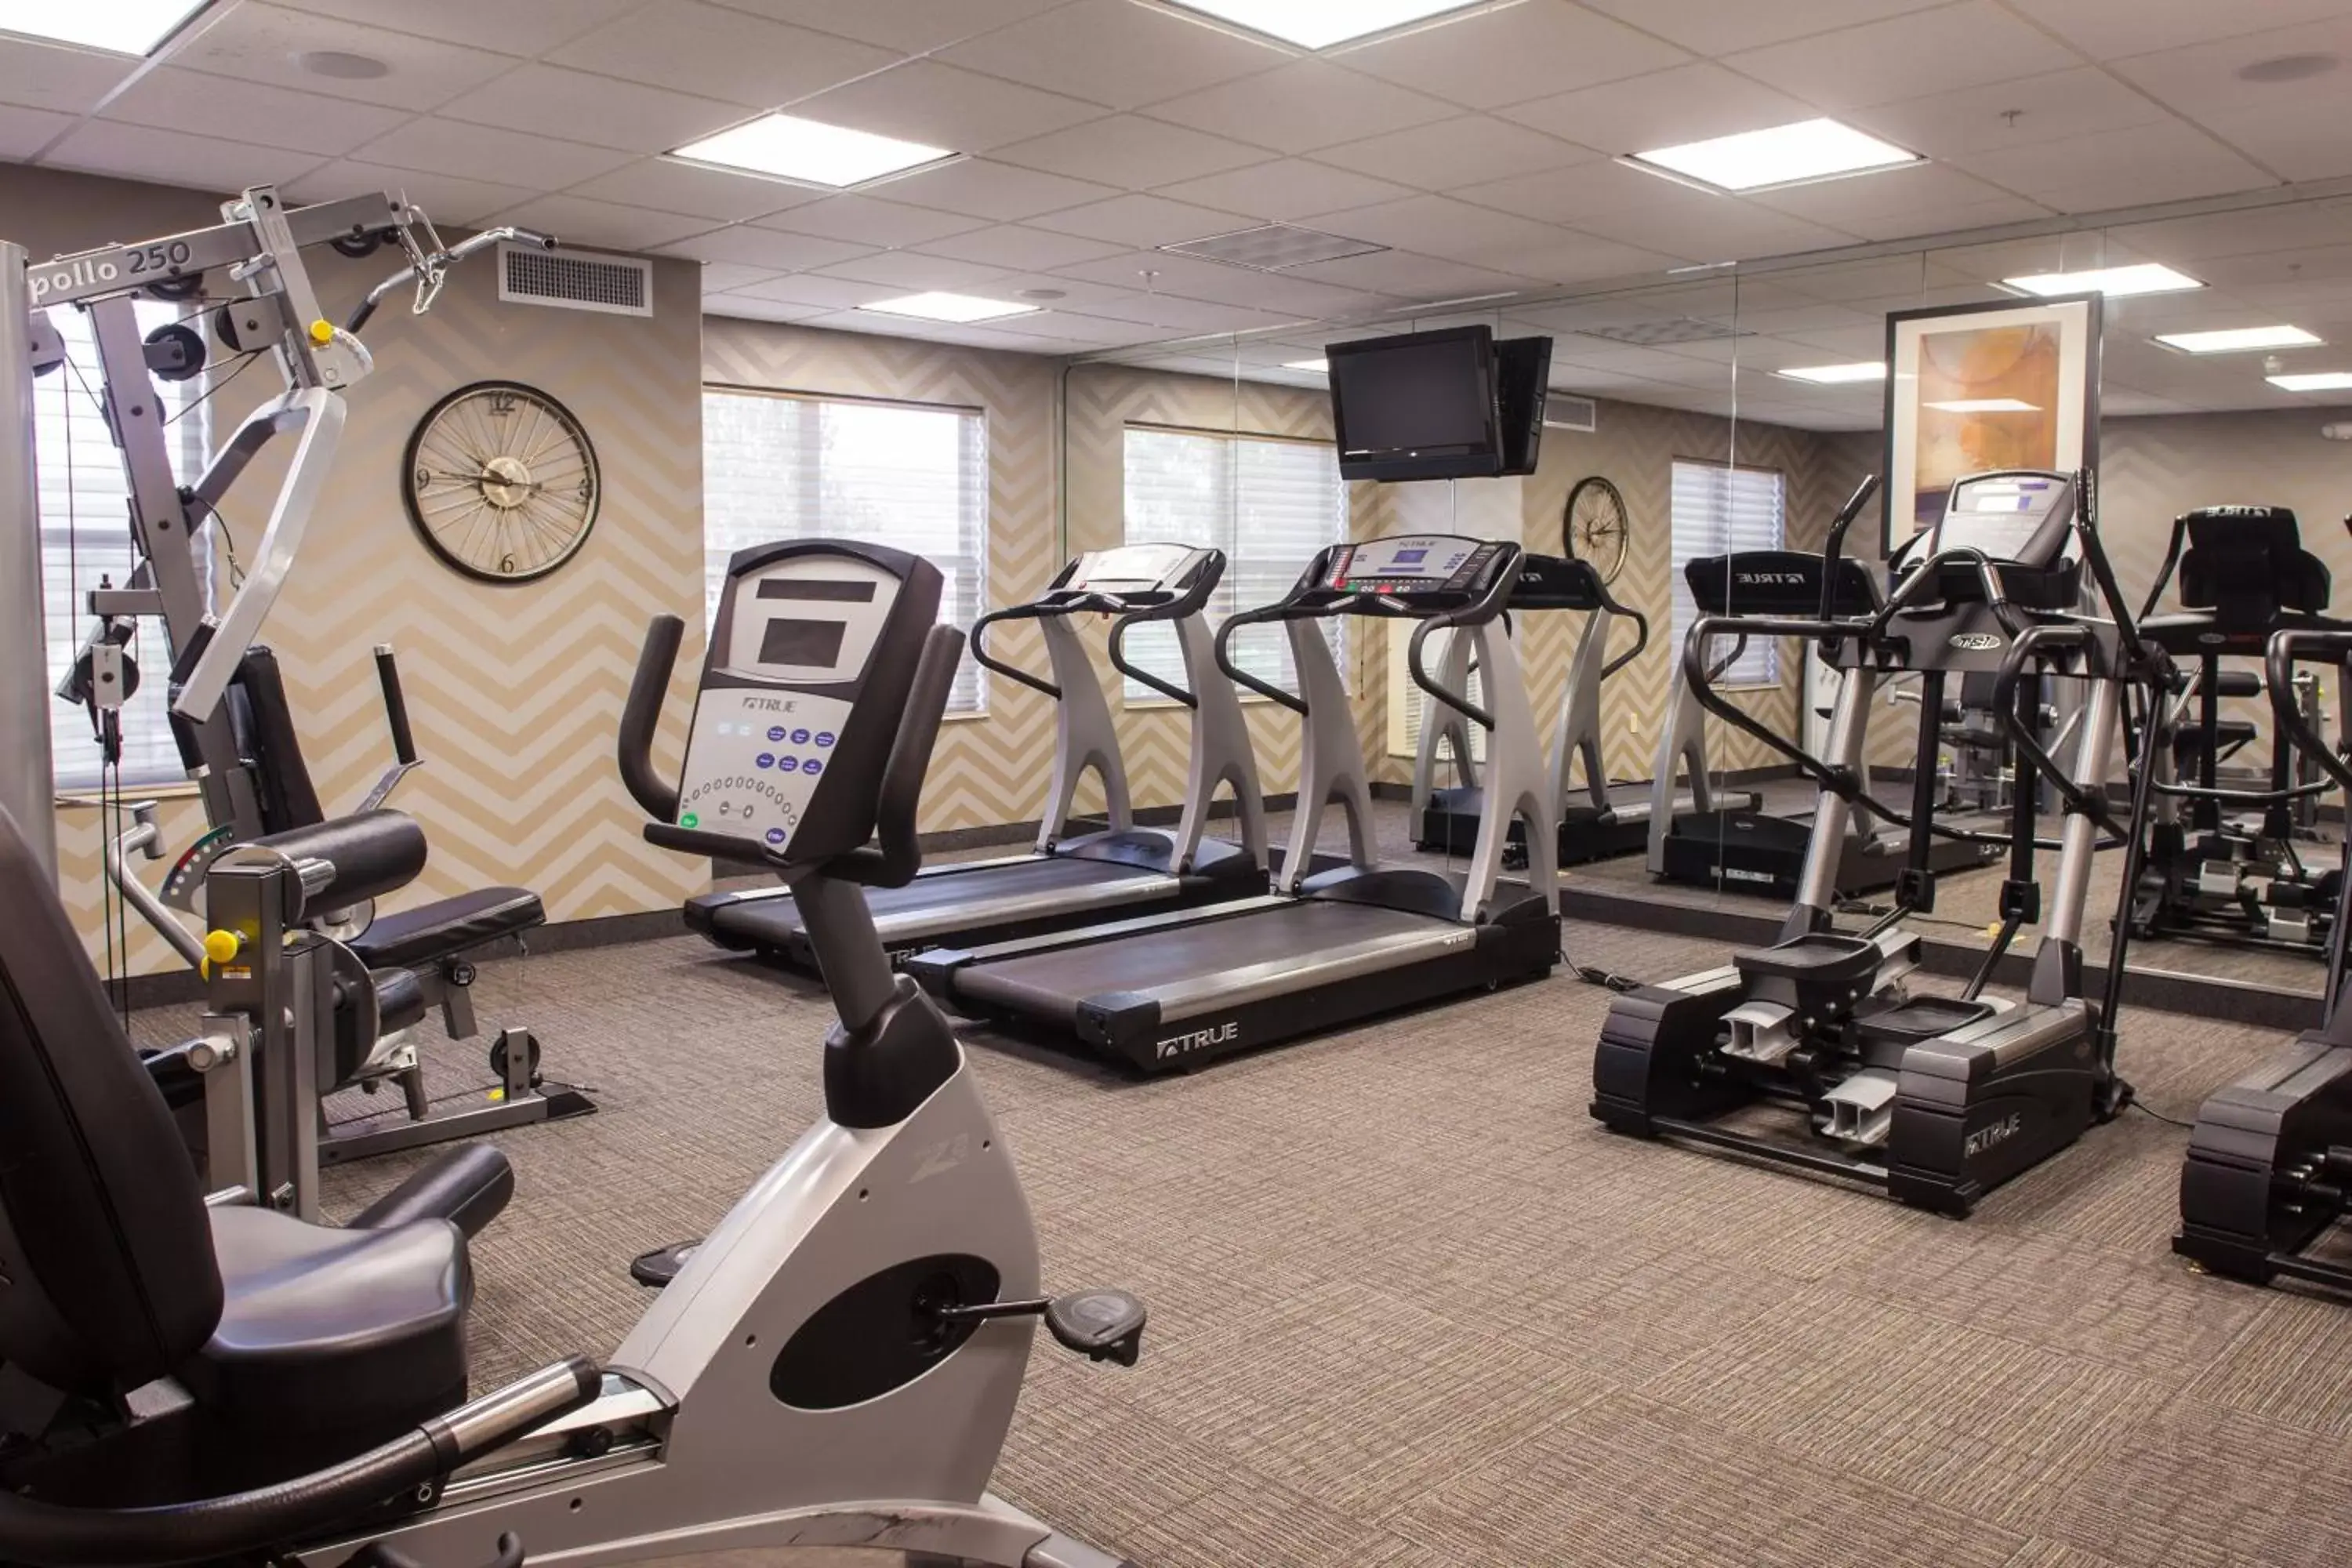 Fitness centre/facilities, Fitness Center/Facilities in Residence Inn Prescott